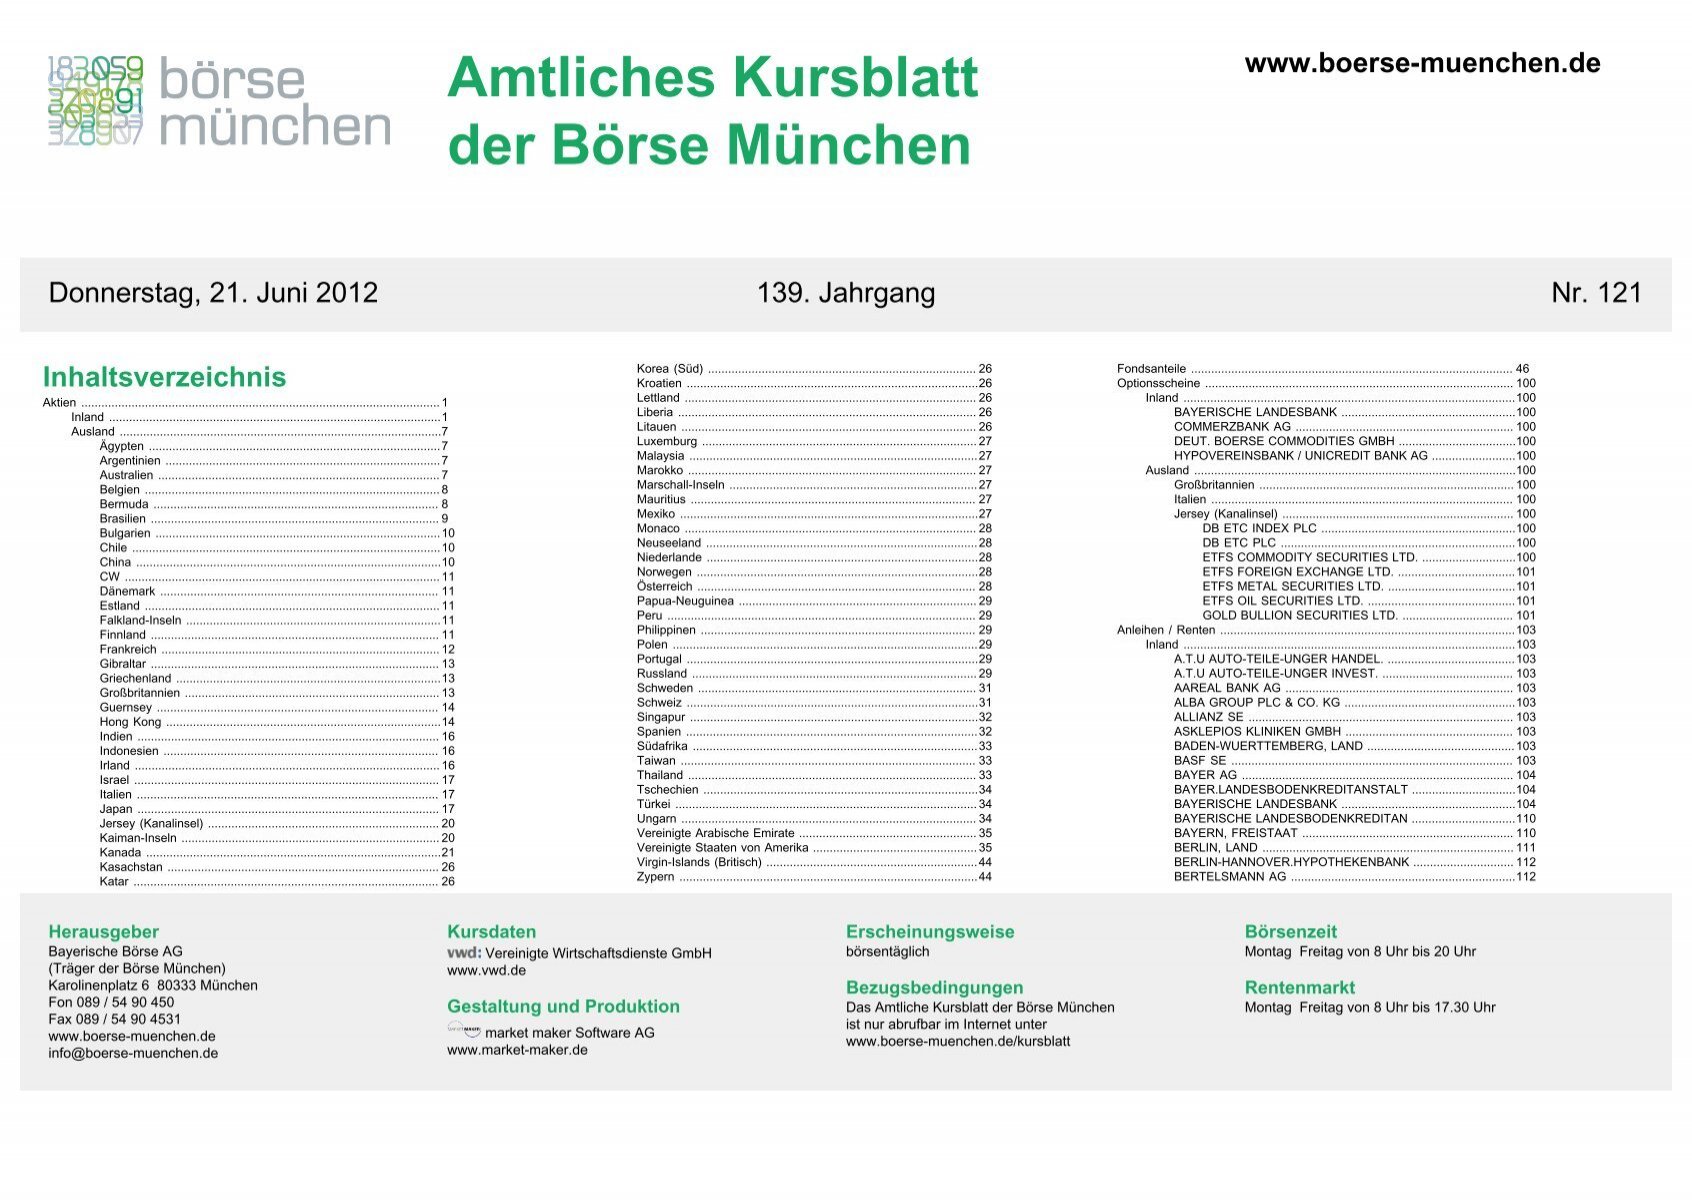 Amtliches Kursblatt Der Borse Munchen Bayerische Borse